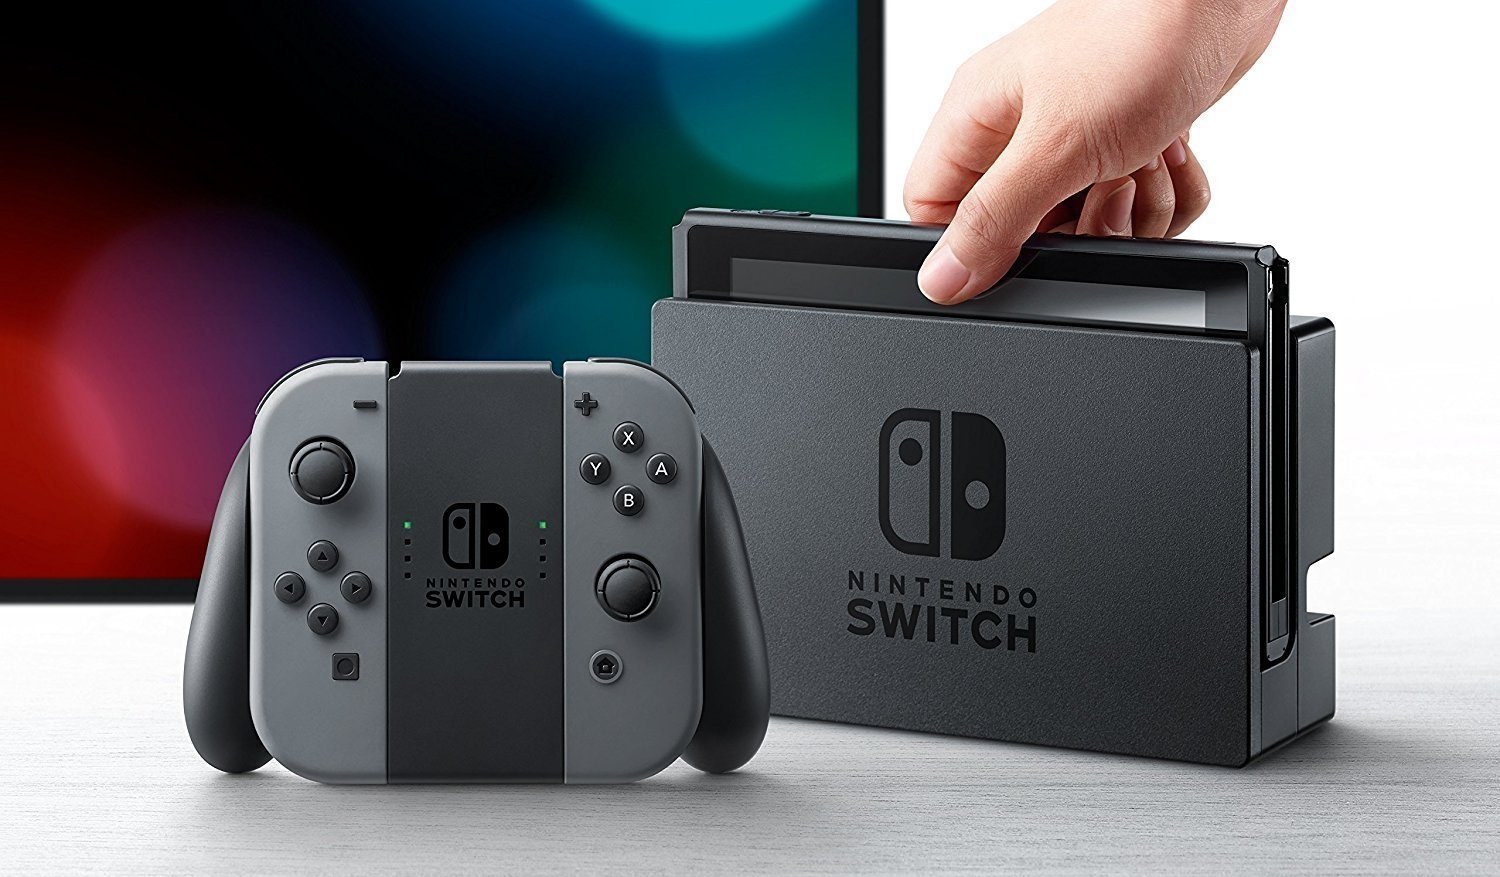 Ya existe una comunidad que a encontrar Nintendo Switch por el mundo